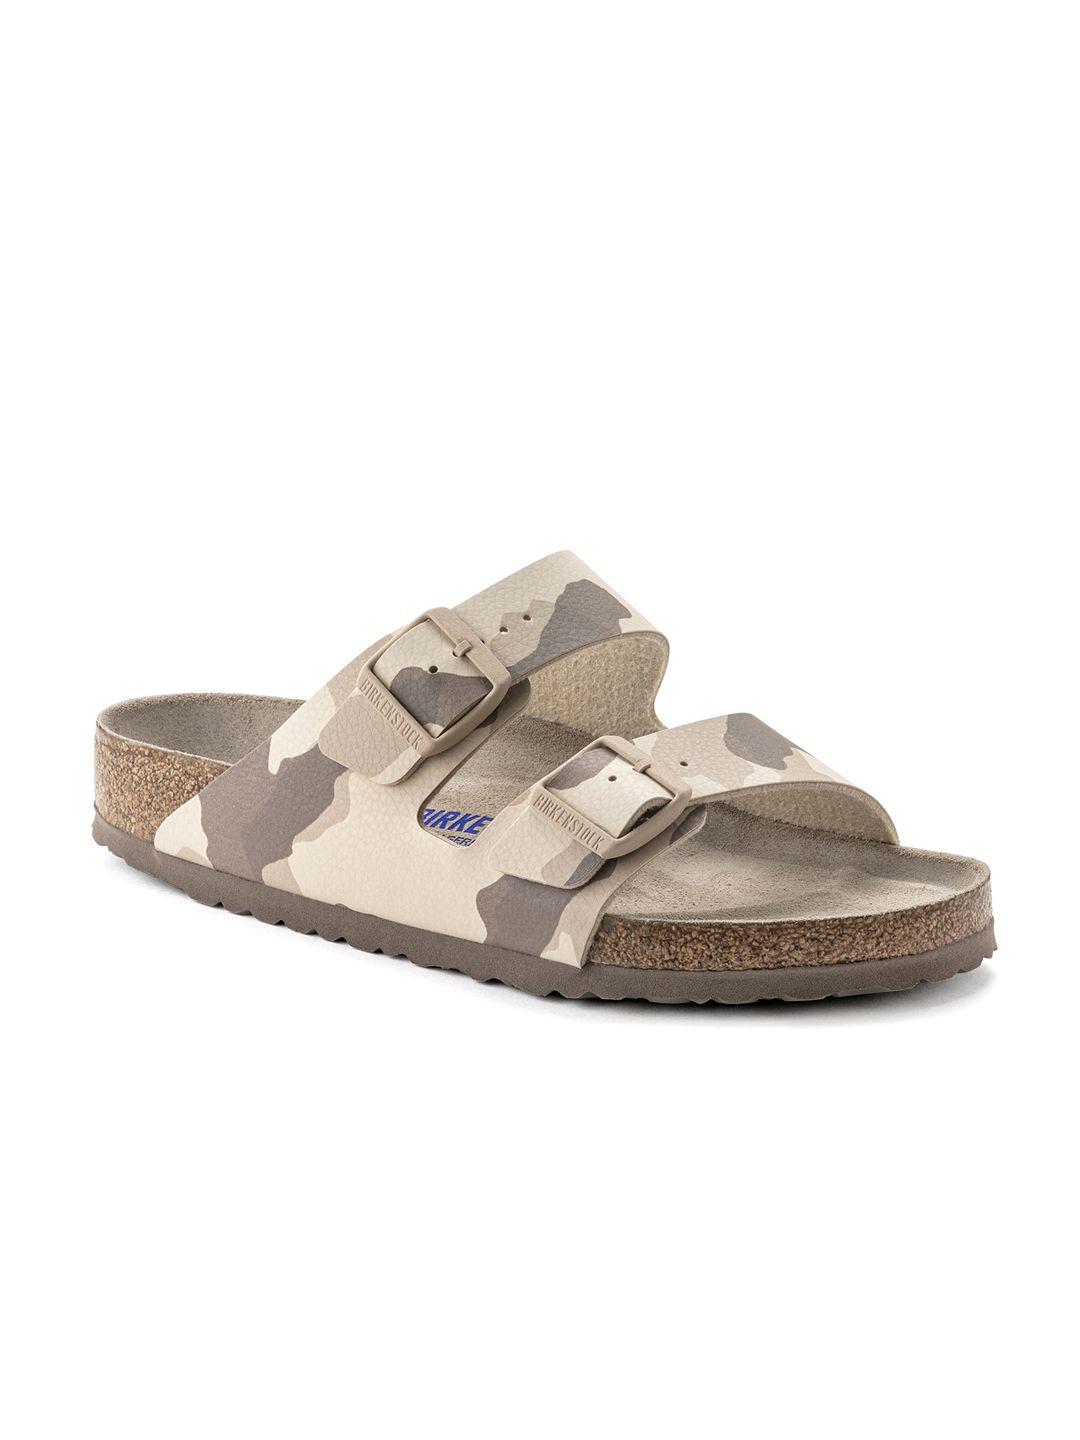 birkenstock men beige arizona comfort sandals